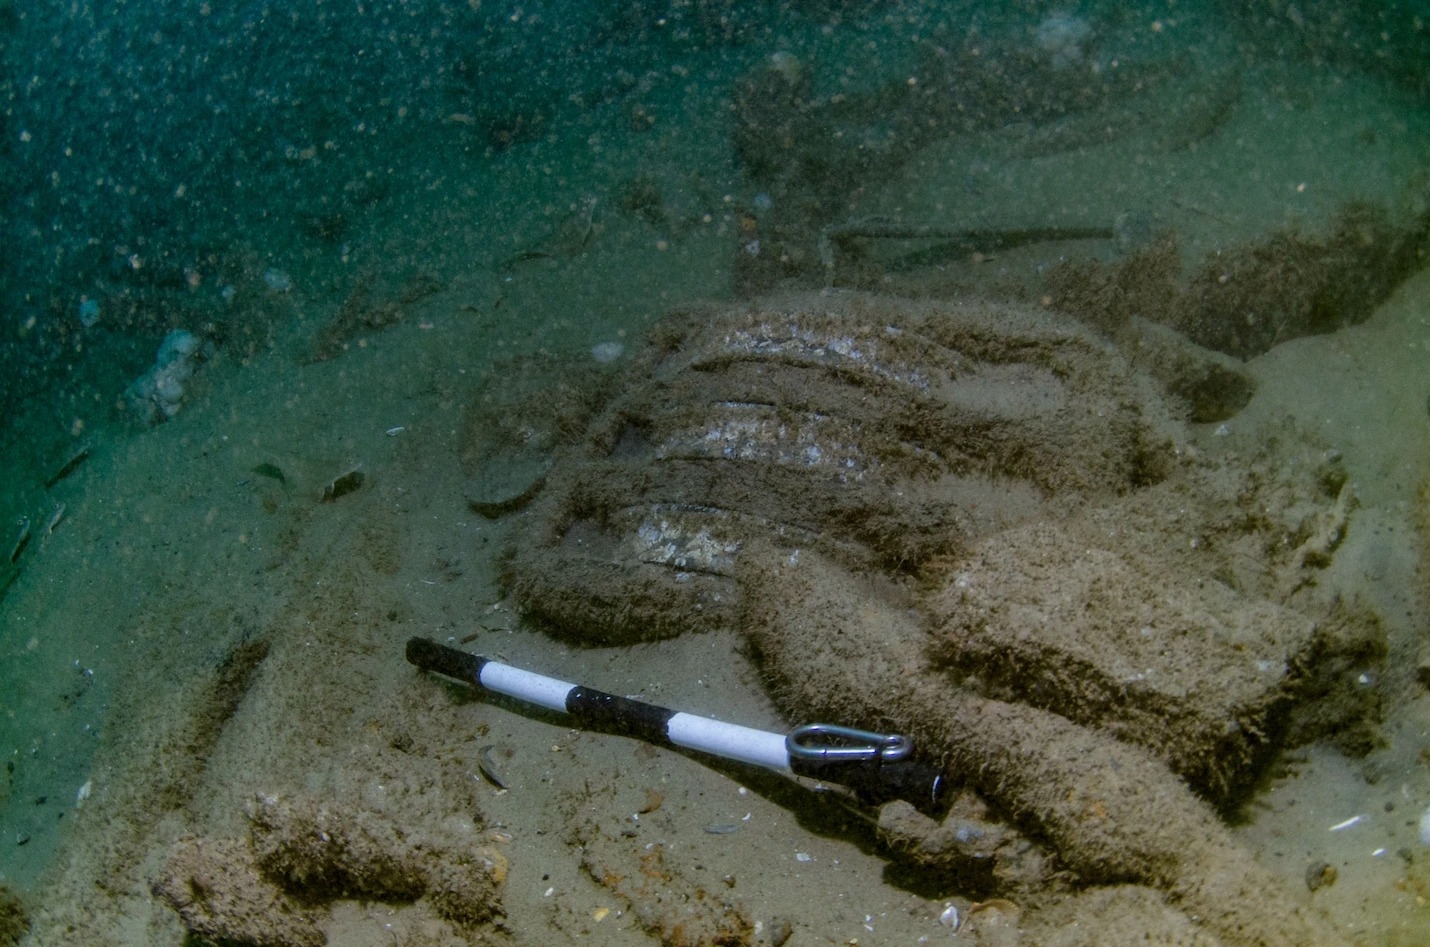 暴露在海床上的這塊滑輪屬於格洛斯特號船上的裝置之一。沙土底下可能還埋著更多文物。PHOTOGRAPH BY NORFOLK HISTORIC SHIPWRECKS PRESS RELEASE 